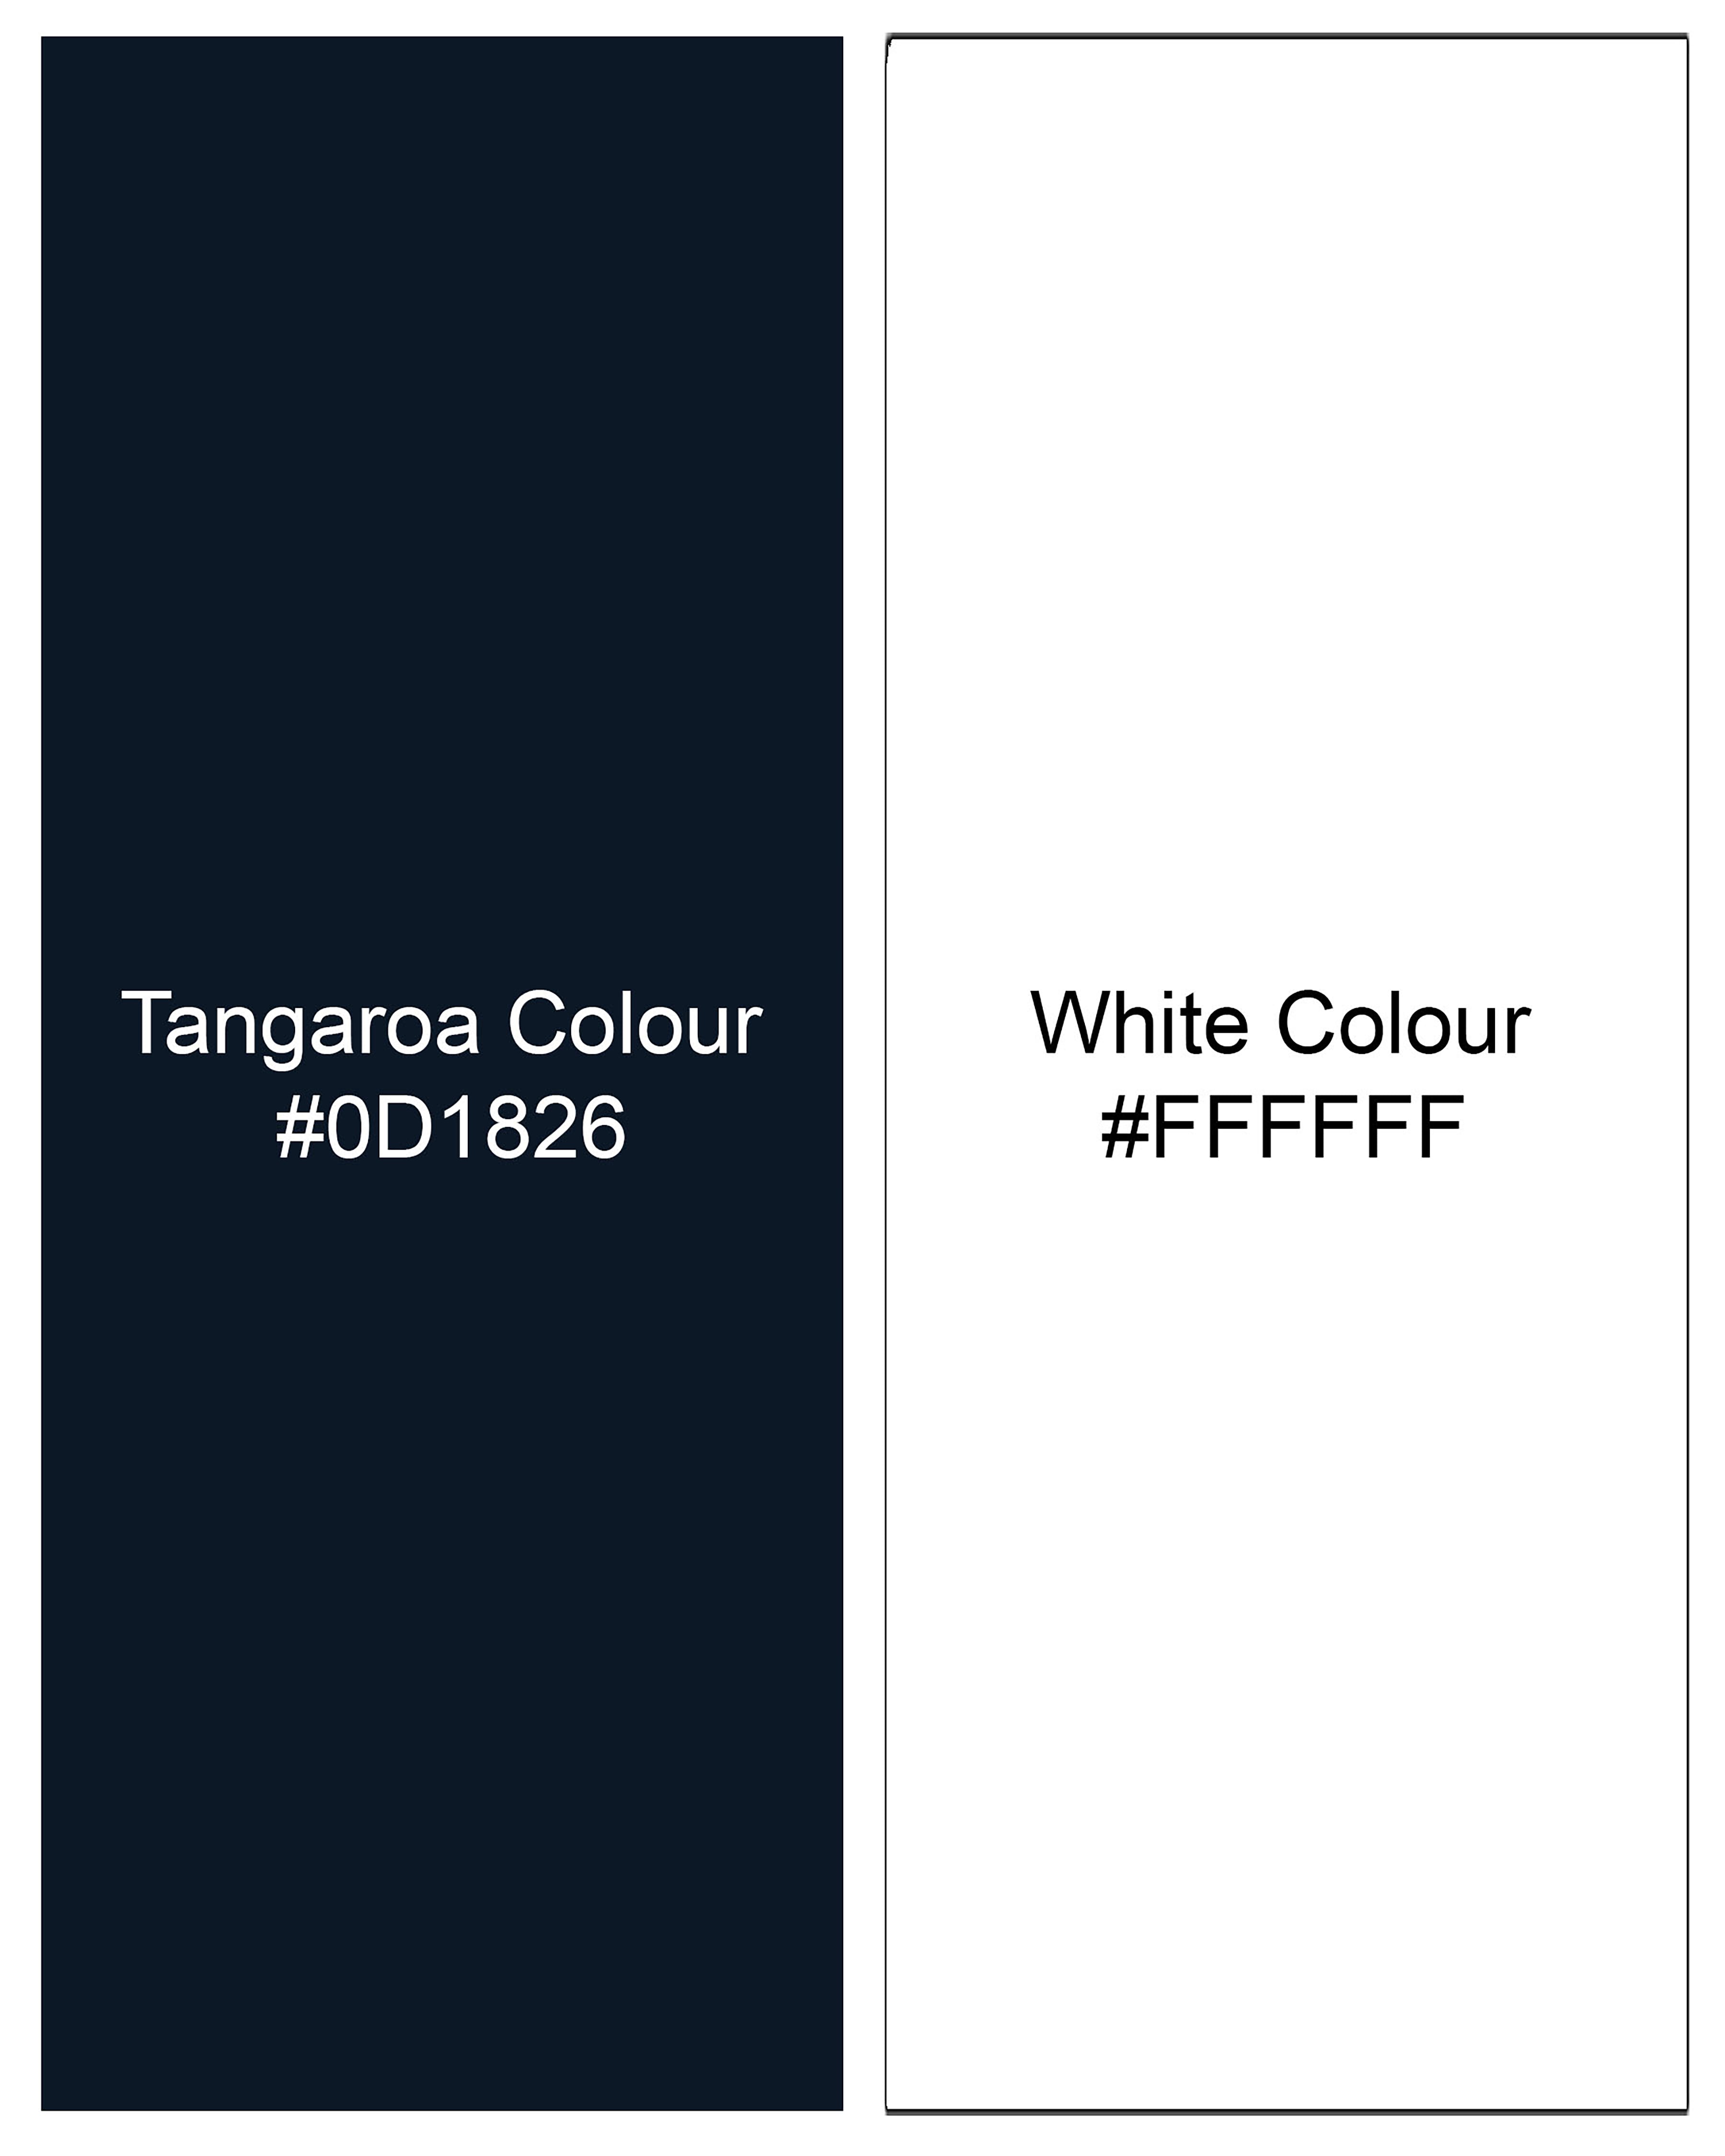 Tangaroa Blue, Yellow and White Block Pattern Super Soft Premium Cotton Hoodie Sweatshirt